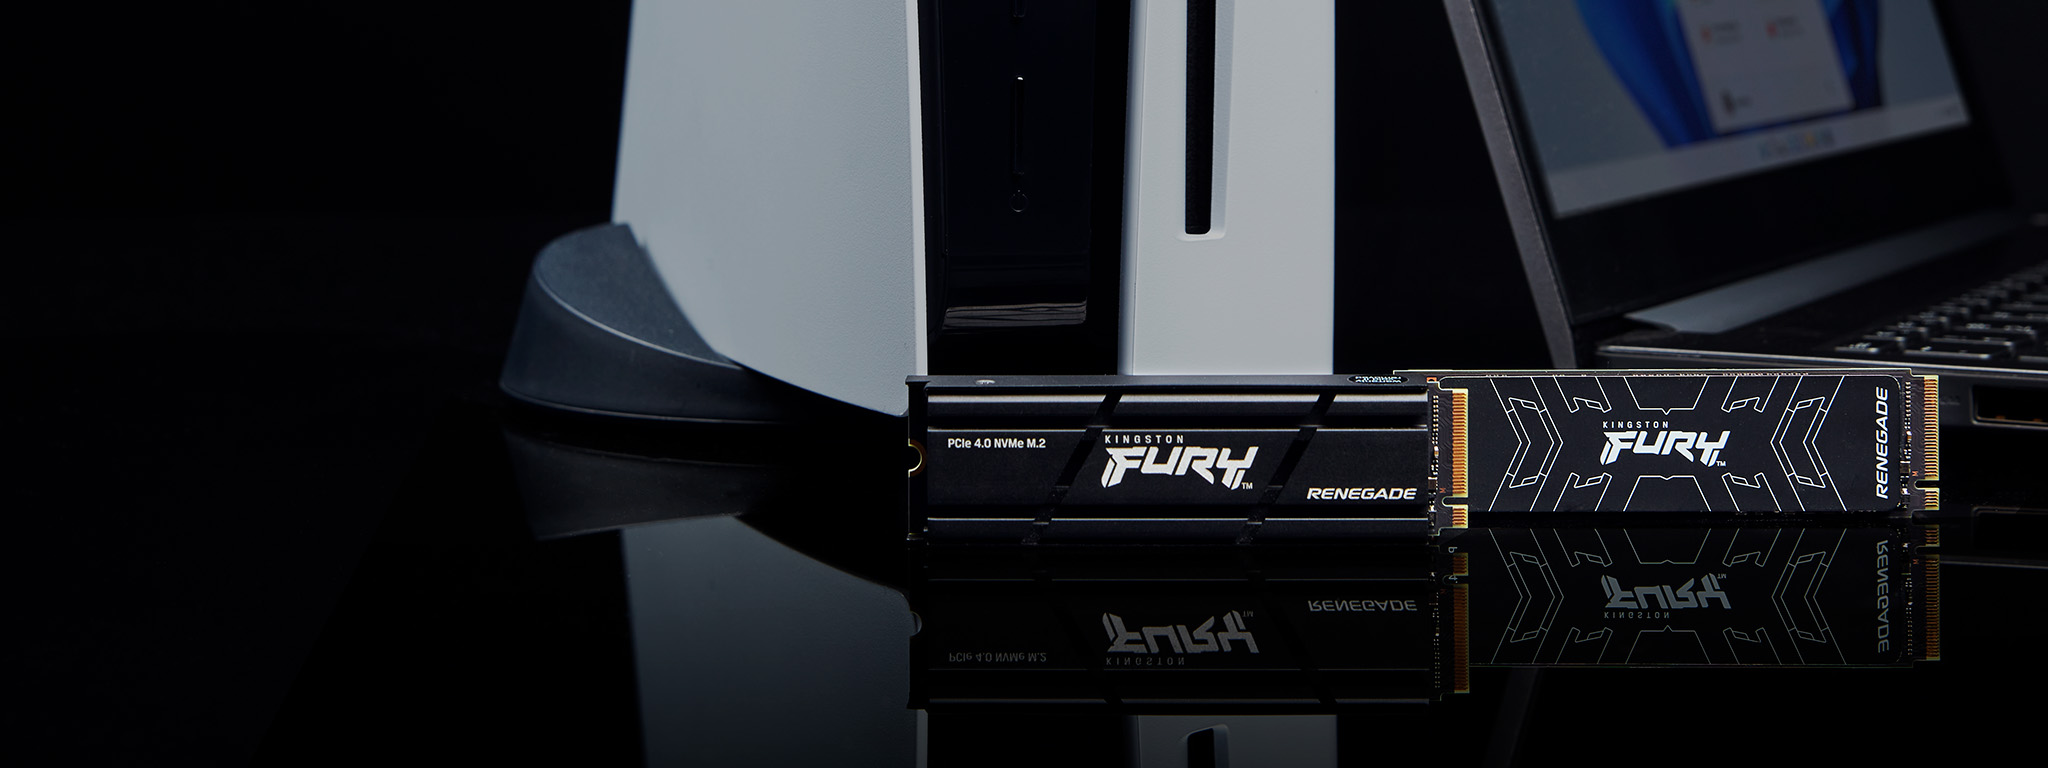 Isı alıcısı içeren ve içermeyen iki Kingston FURY Renegade SSD, bir PS5 ve bir dizüstü bilgisayarın yanında duruyor.